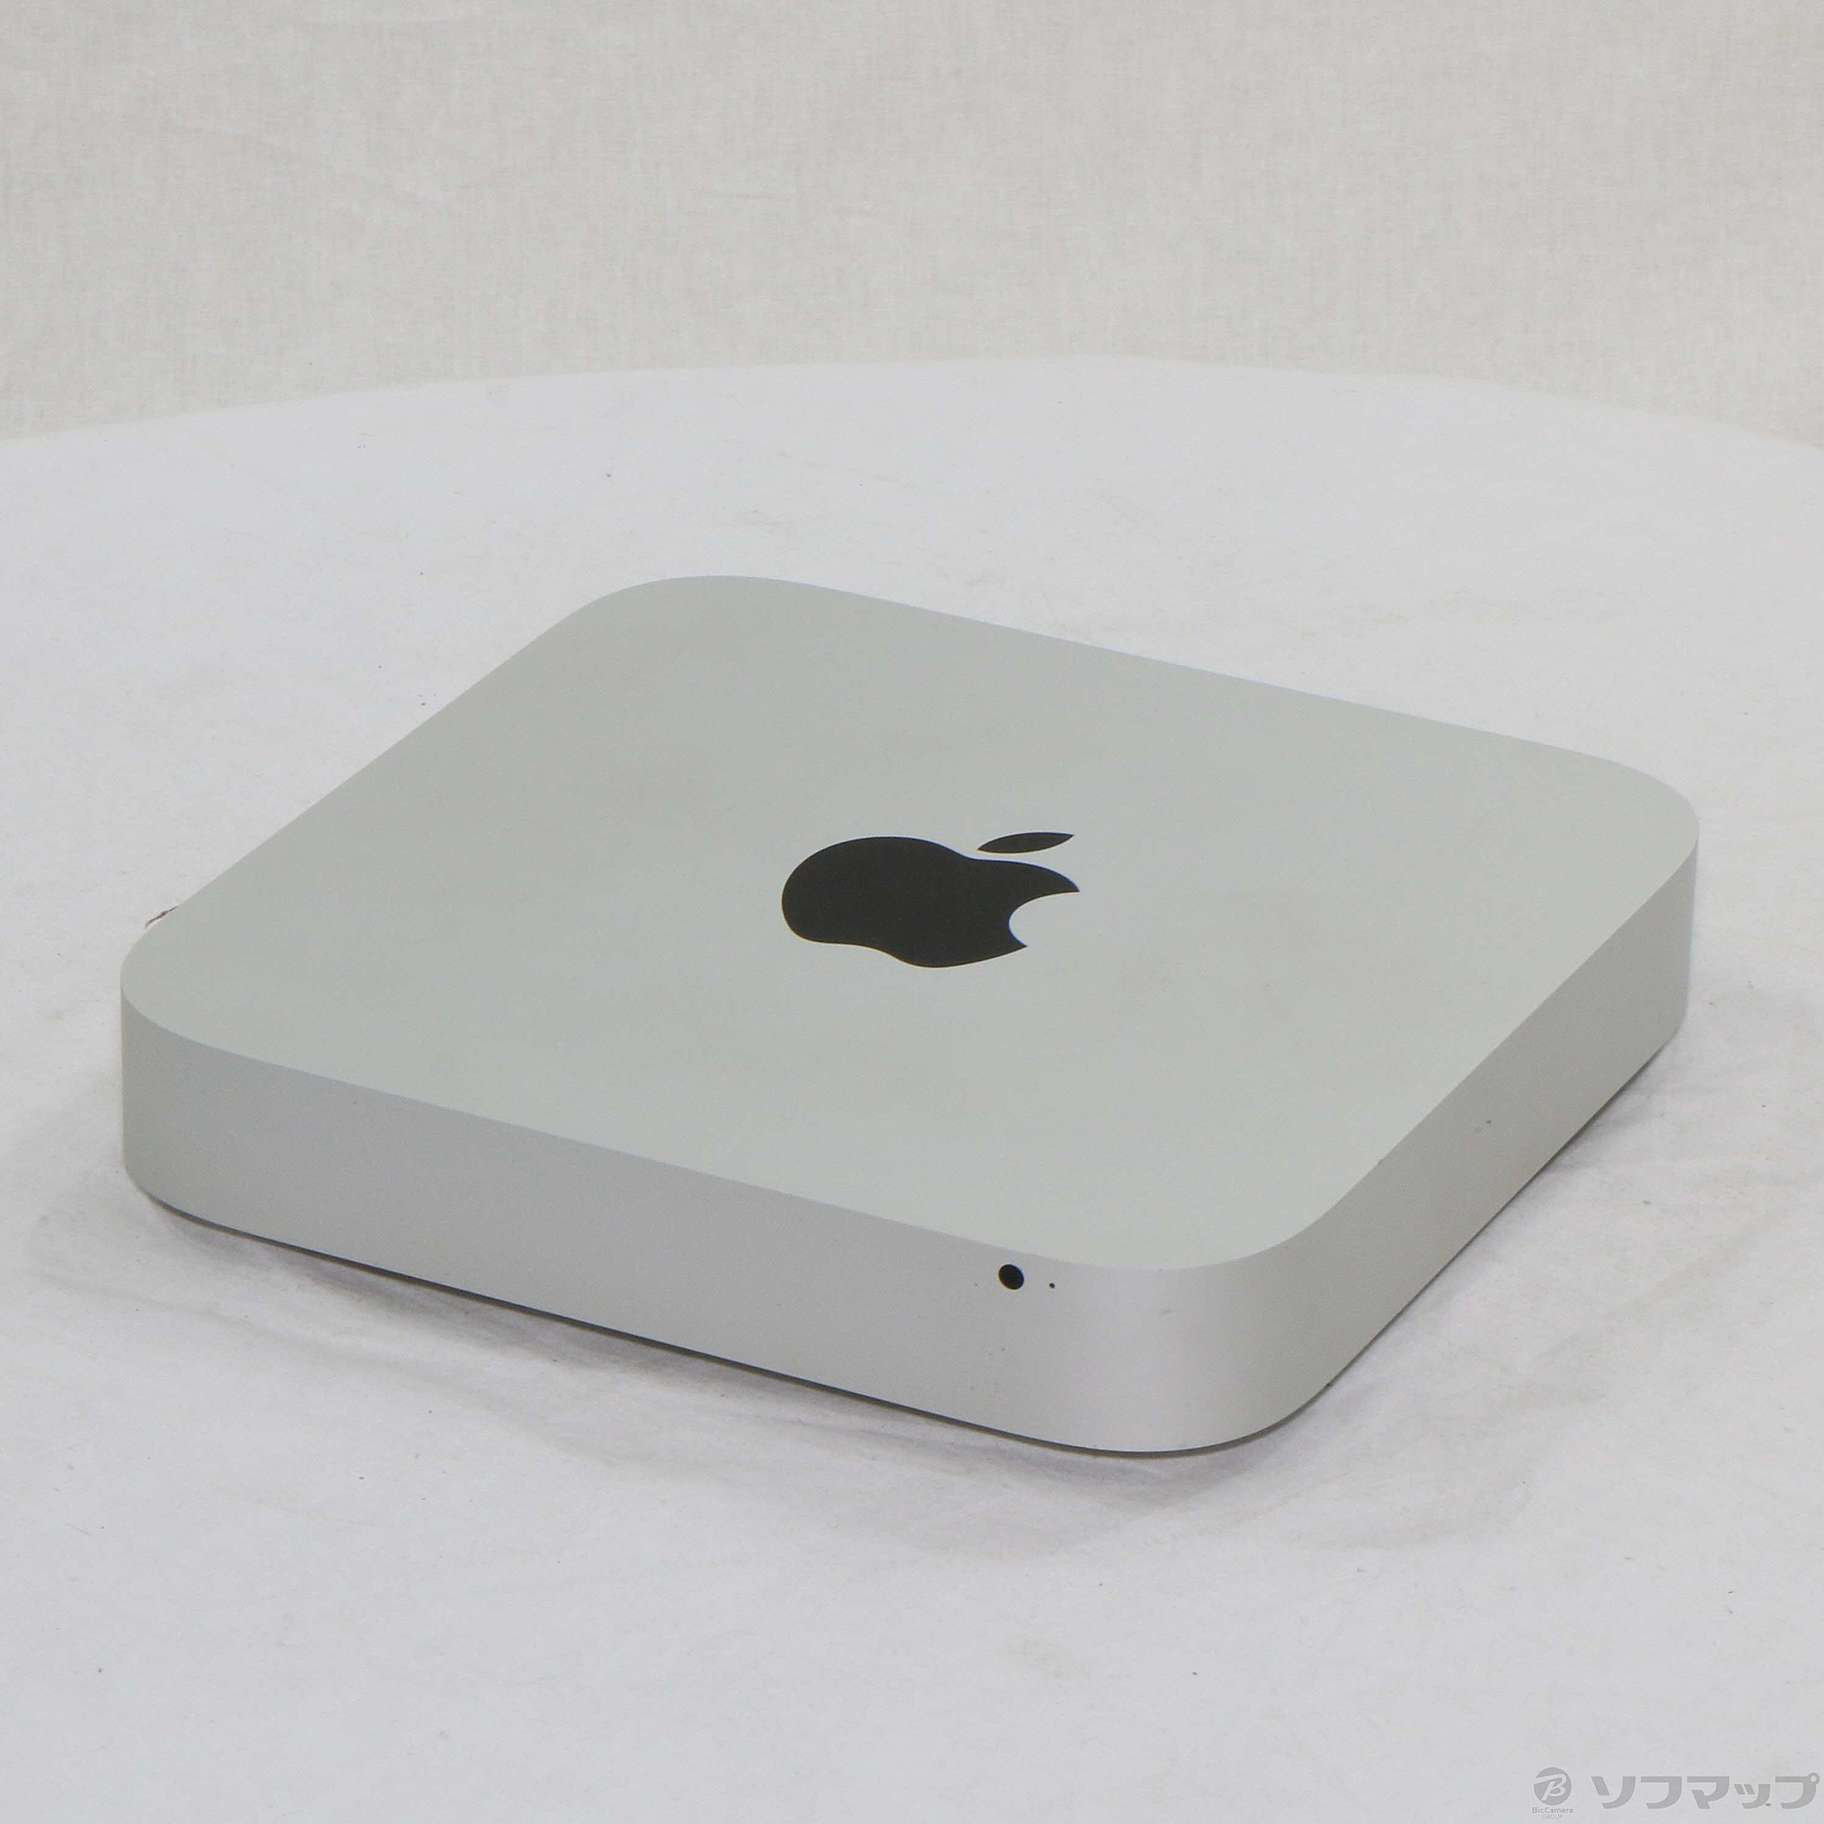 中古】Mac mini Late 2012 MD387J／A Core_i5 2.5GHz 4GB HDD500GB